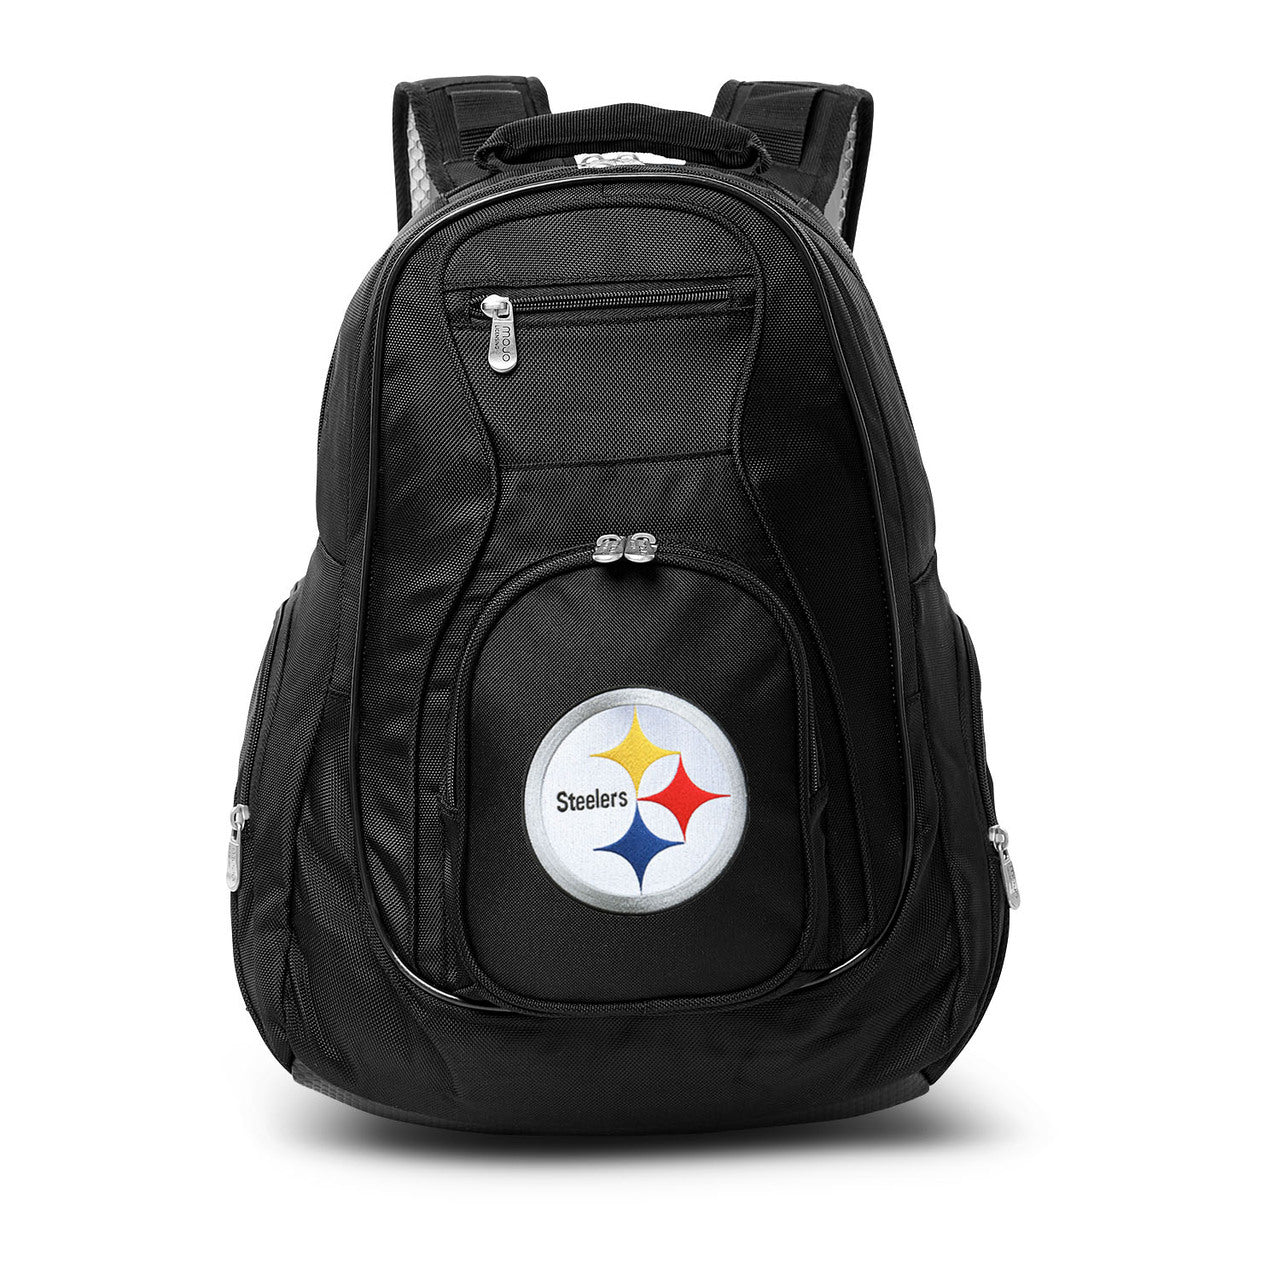 Steelers Backpack | Pittsburgh Steelers Laptop Backpack- Black